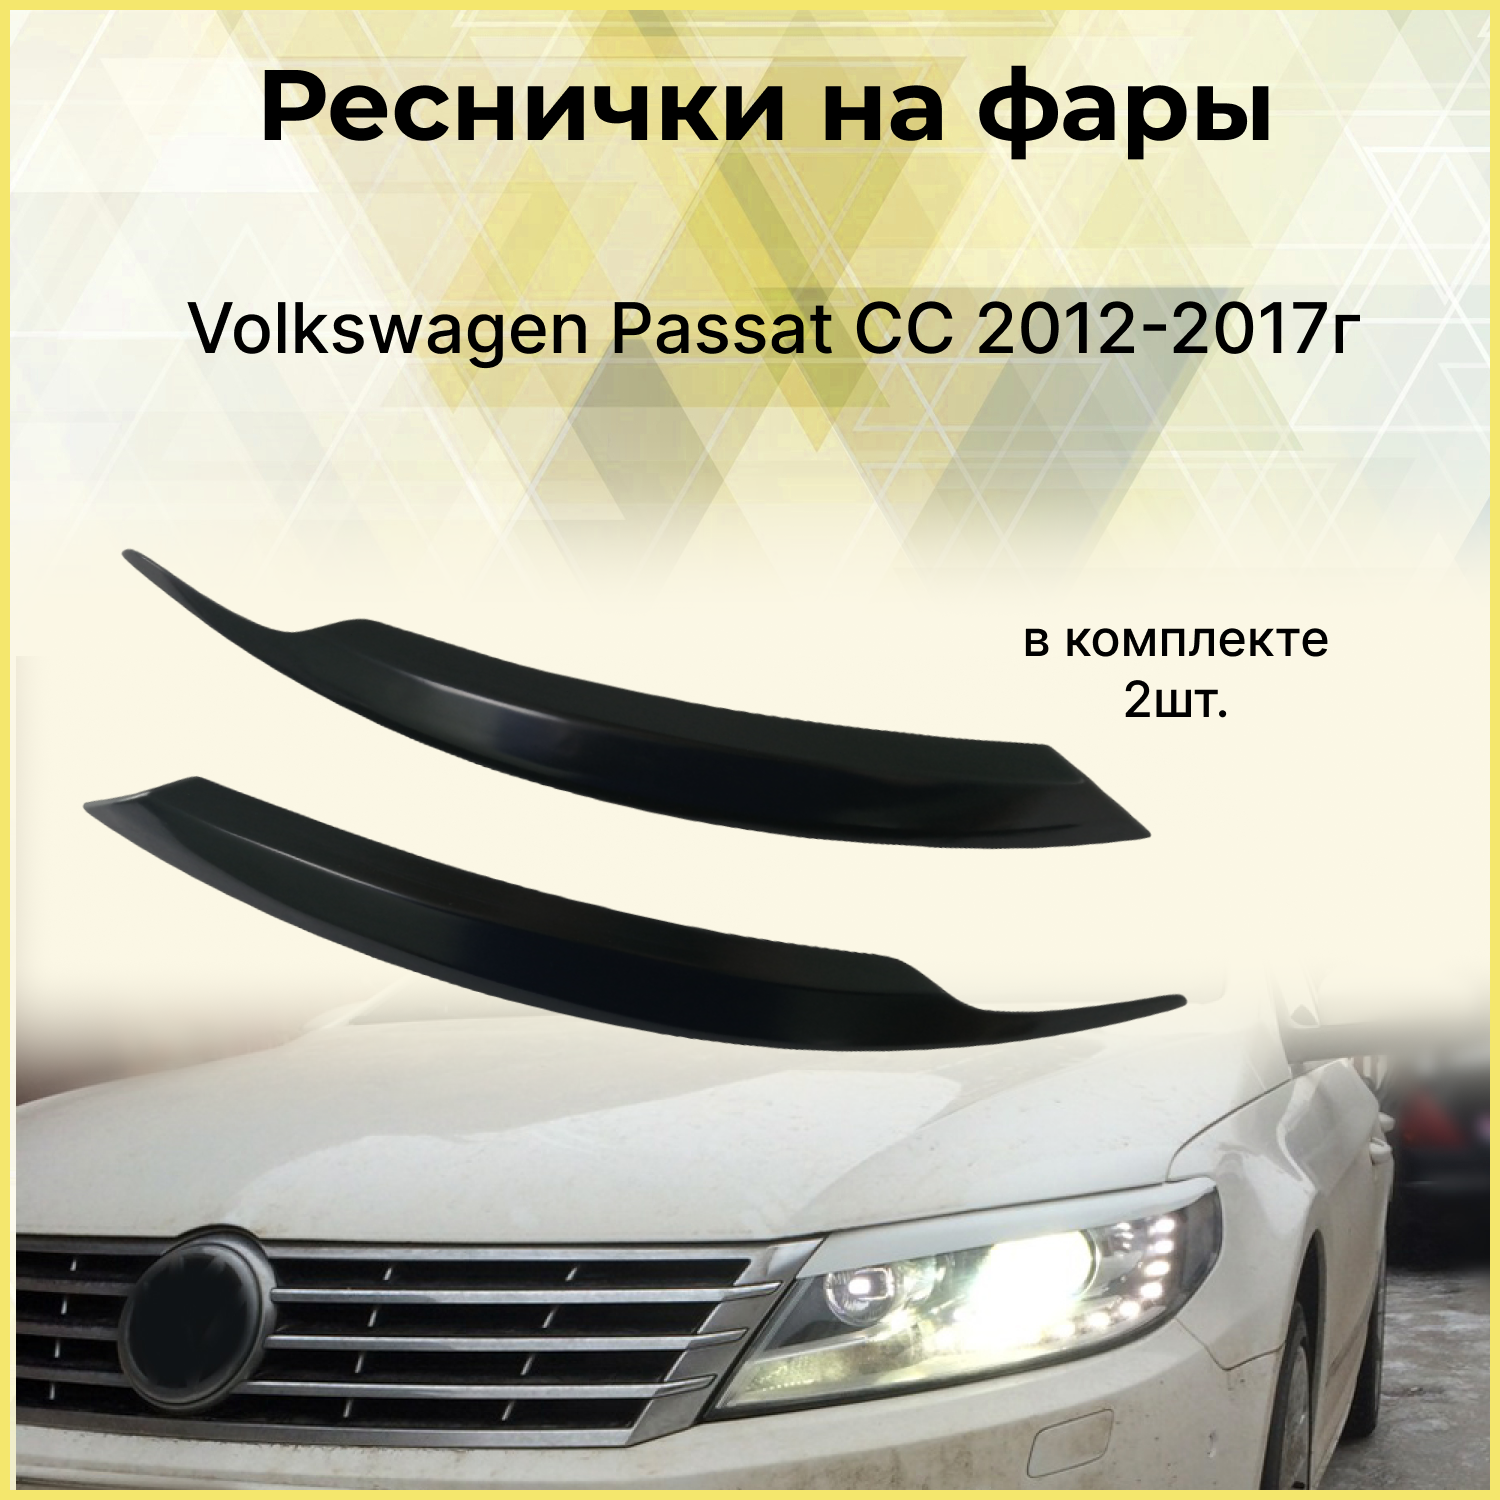 Реснички на фары для Volkswagen Passat CC 2012-2017 рестайлинг